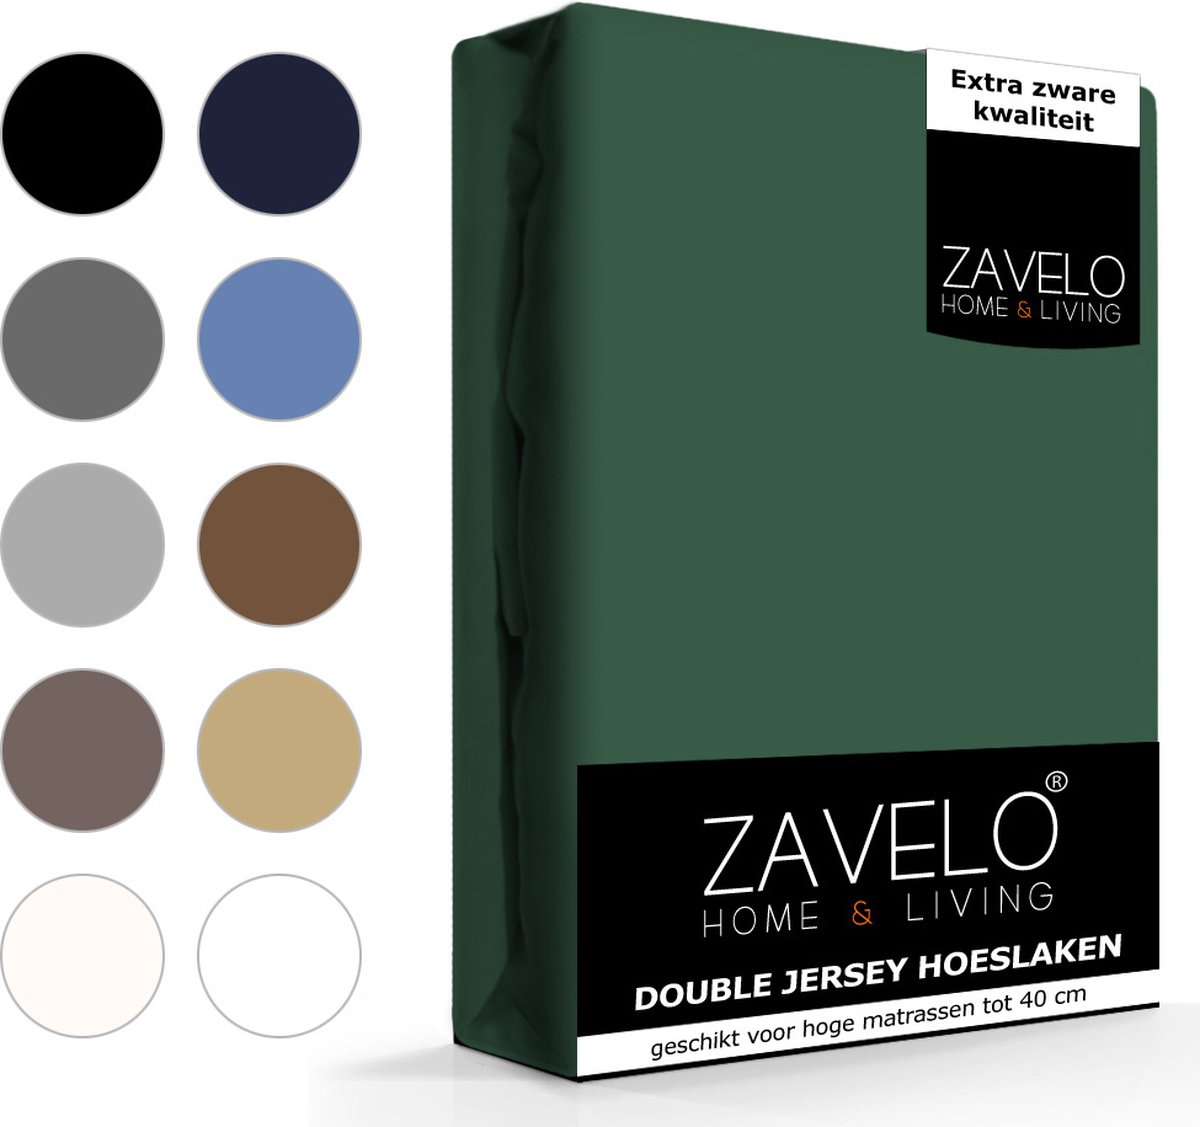 Slaaptextiel Zavelo Double Jersey Hoeslaken-lits-jumeaux (200x220 Cm) - Groen